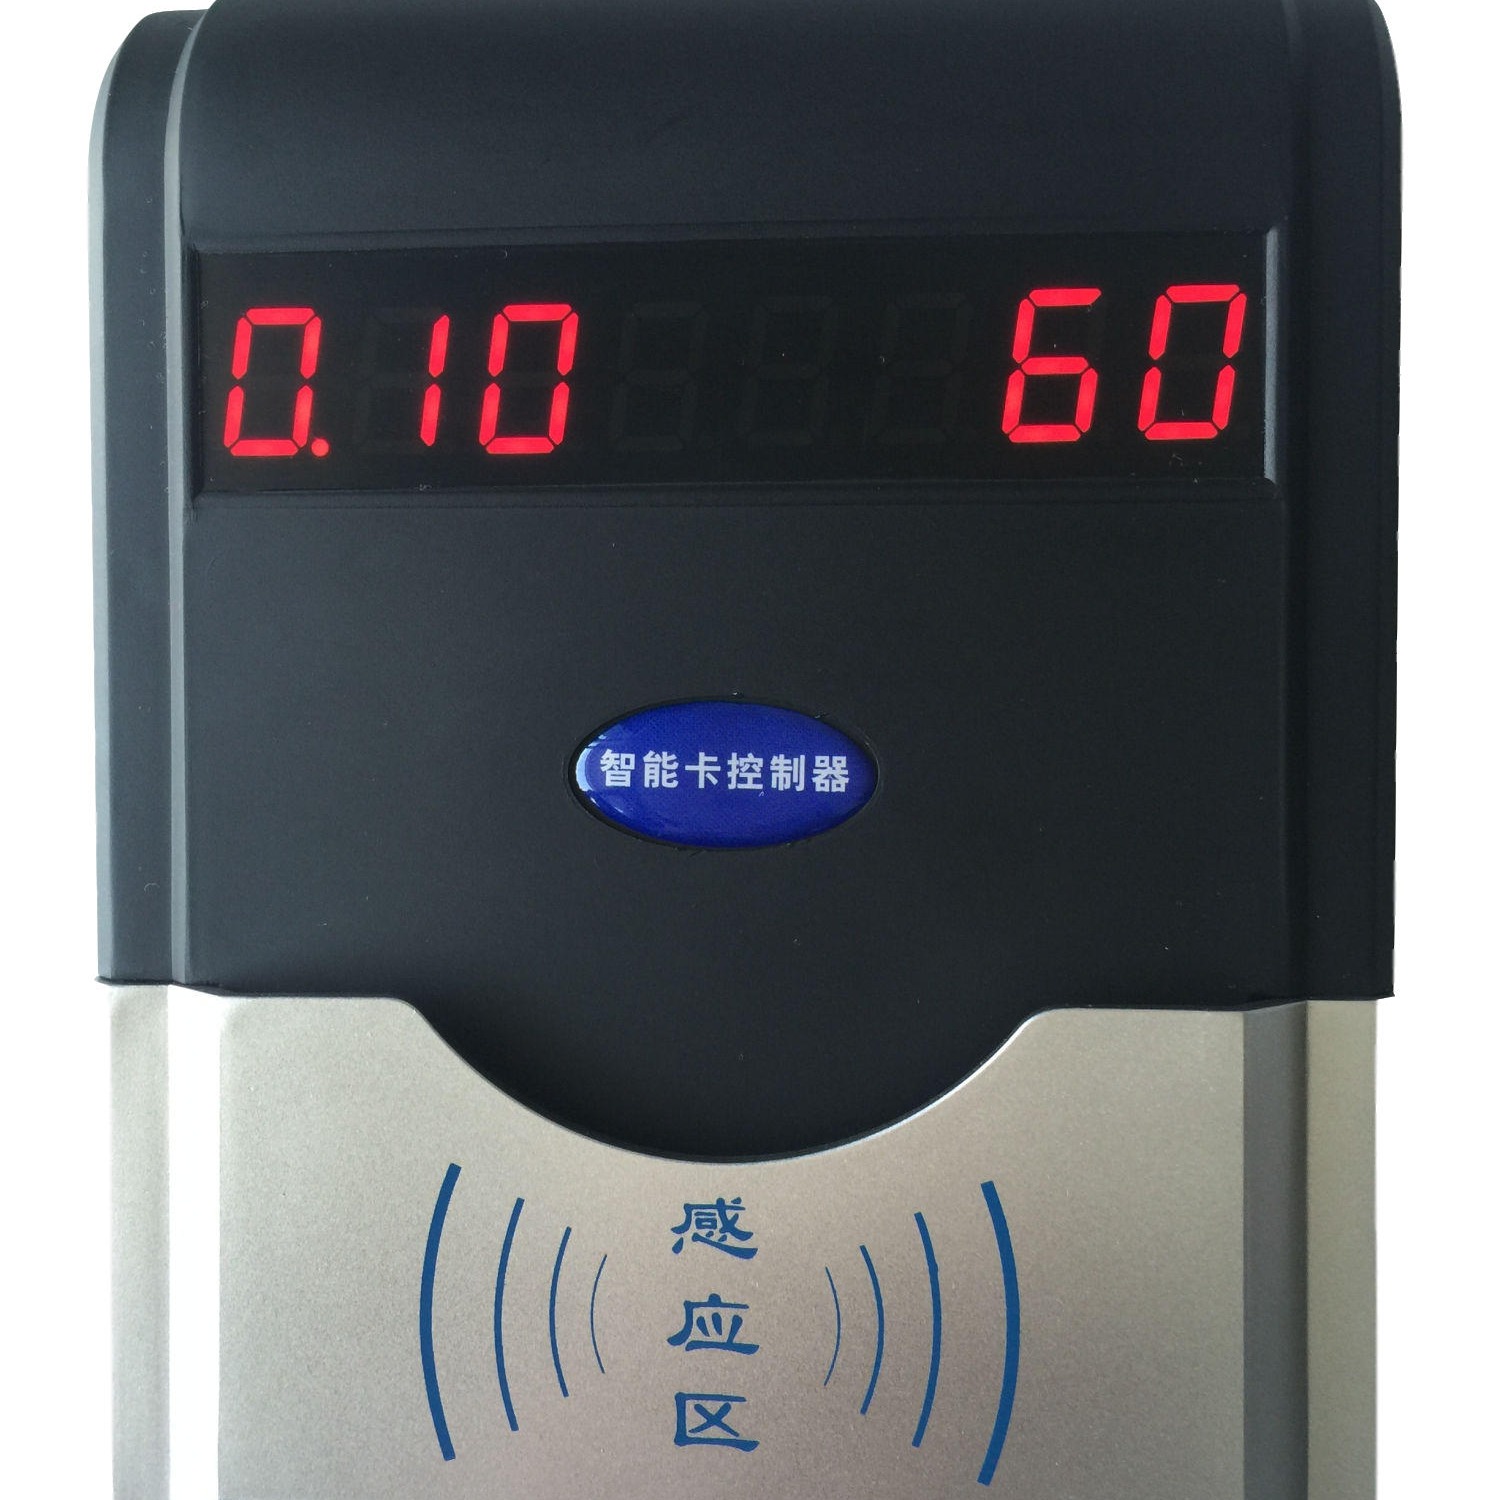 兴天下HF-660刷卡洗澡水控机-刷卡节水控制器-IC卡节能控水机